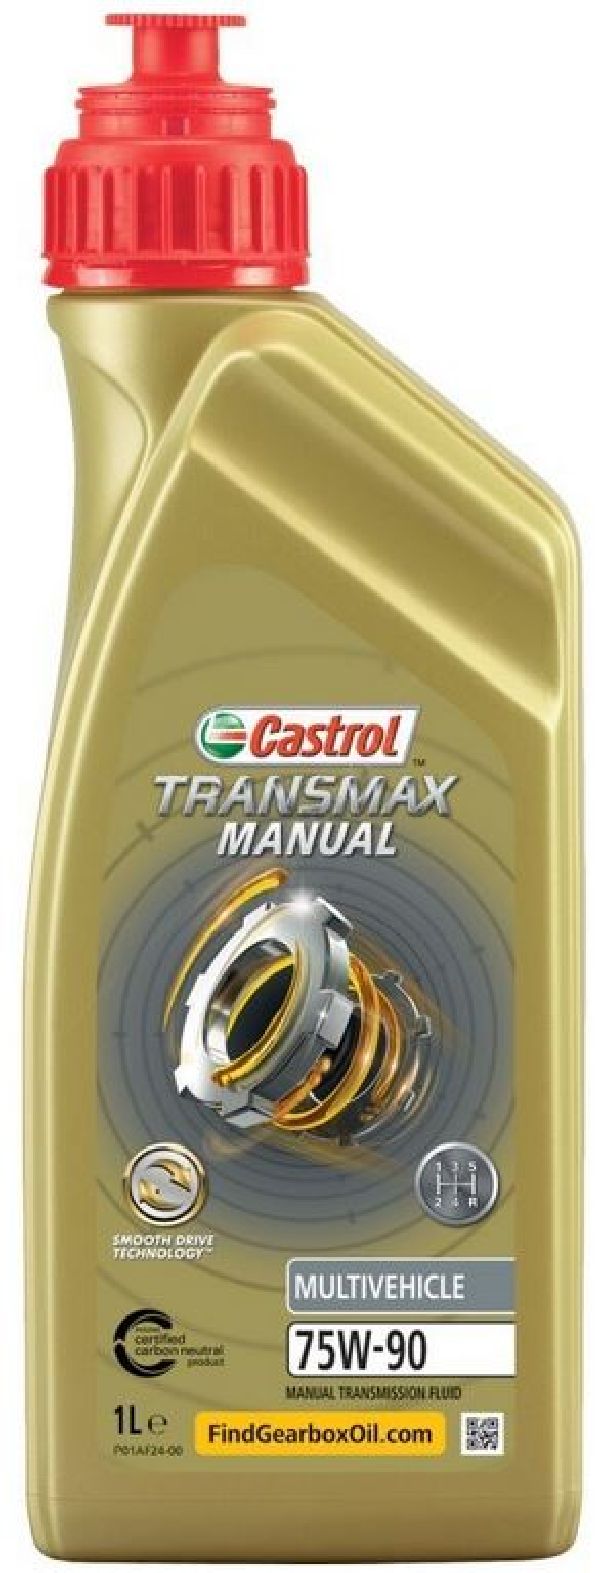 Transmax Manual Transaxle 75W-90